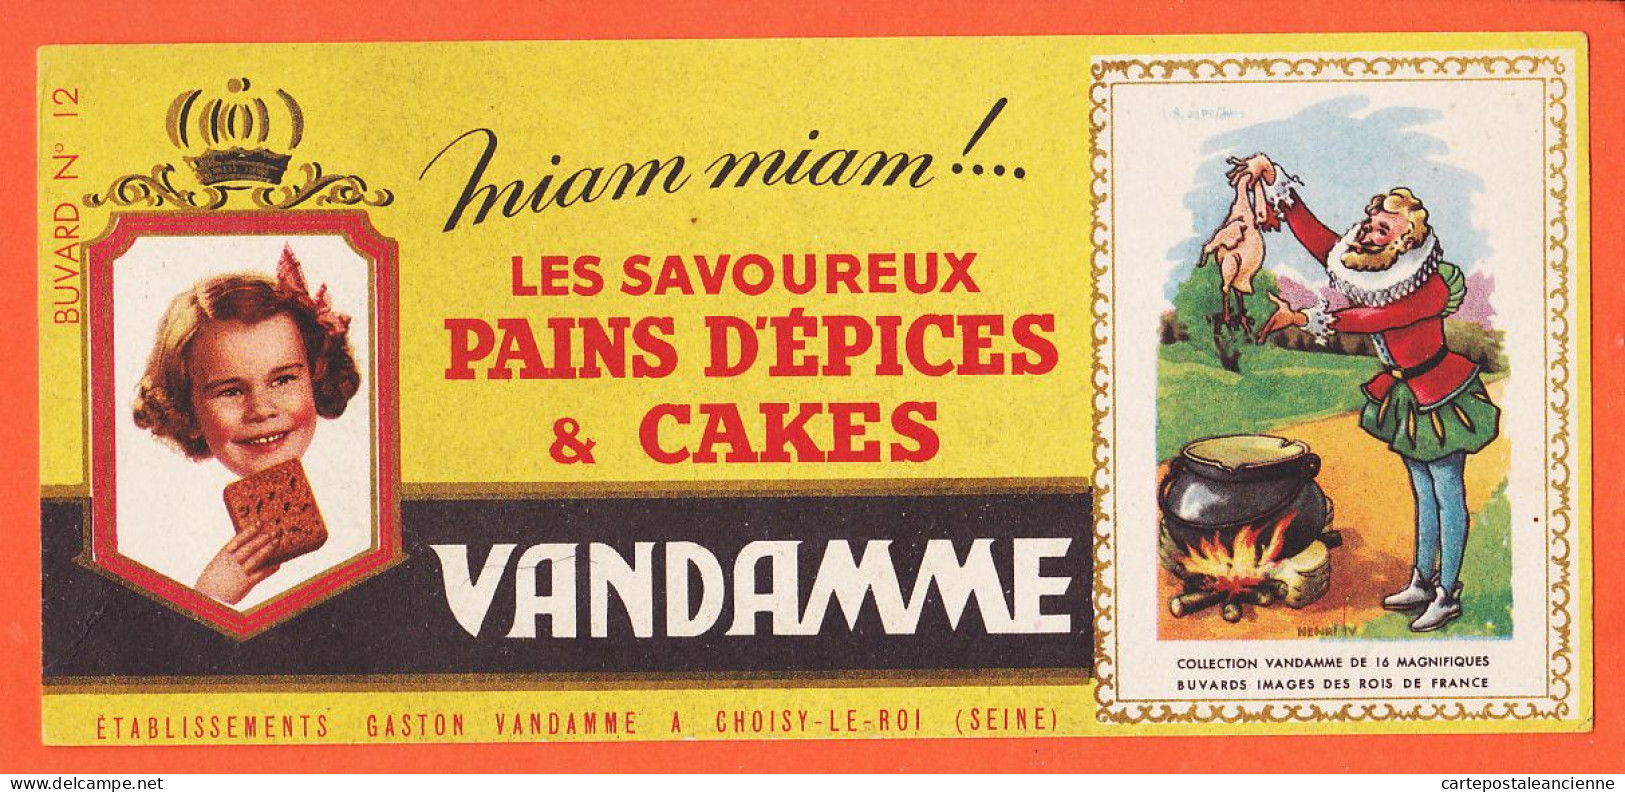 06185 / Pains Epices Cakes VANDAMME Miam ! Miam Etablissements Gaston Vandamme Choisy-Le-Roi Buvard-Blotter N° 12 - Gingerbread